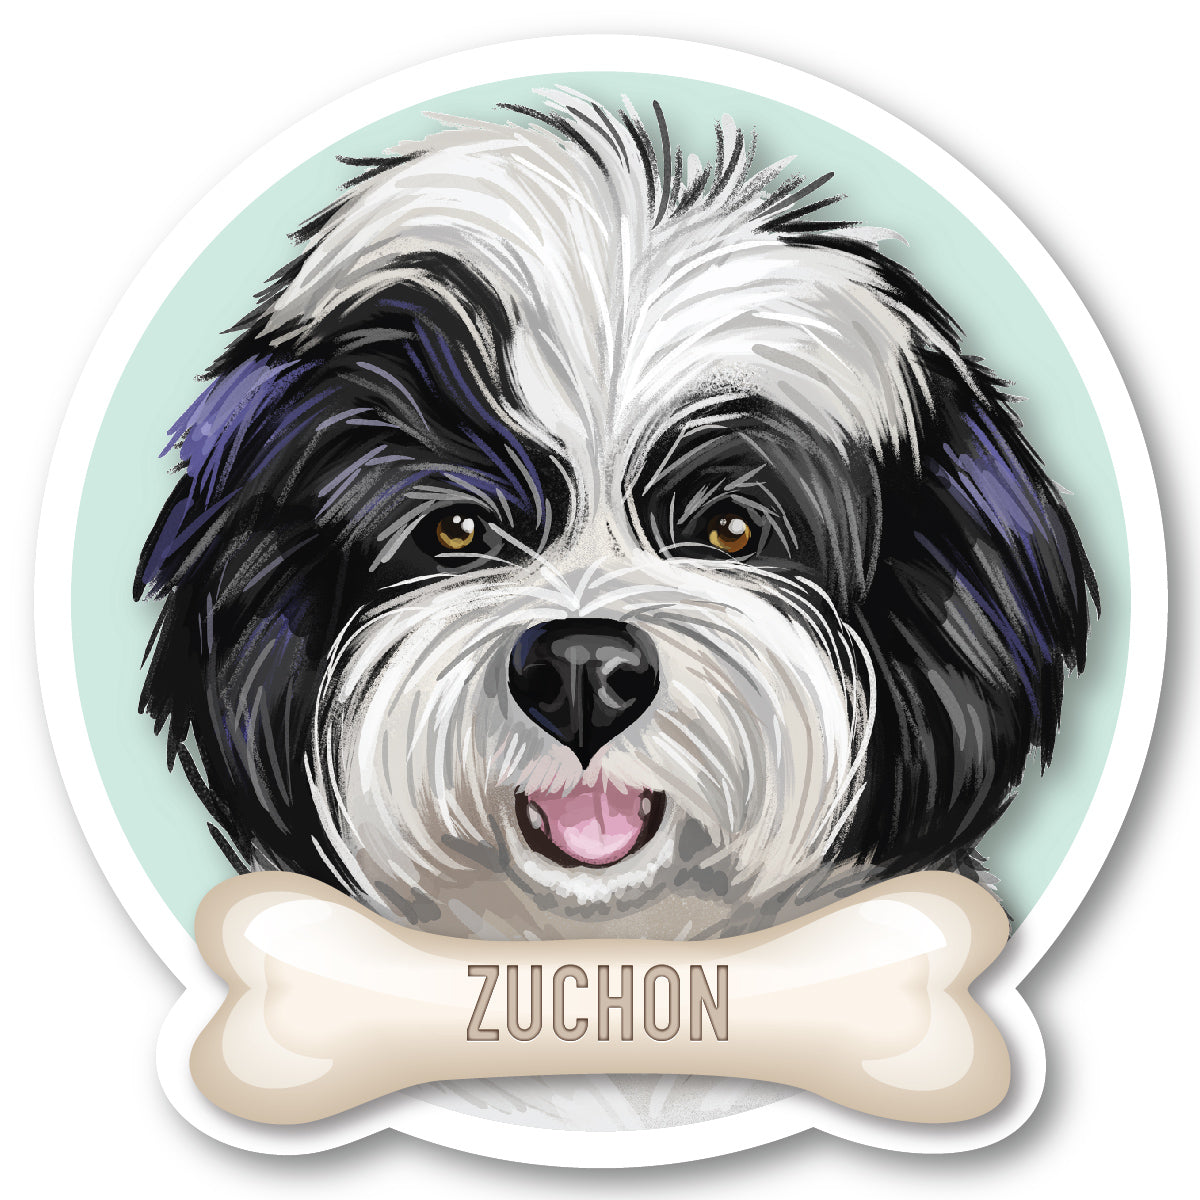 Zuchon Vinyl Sticker